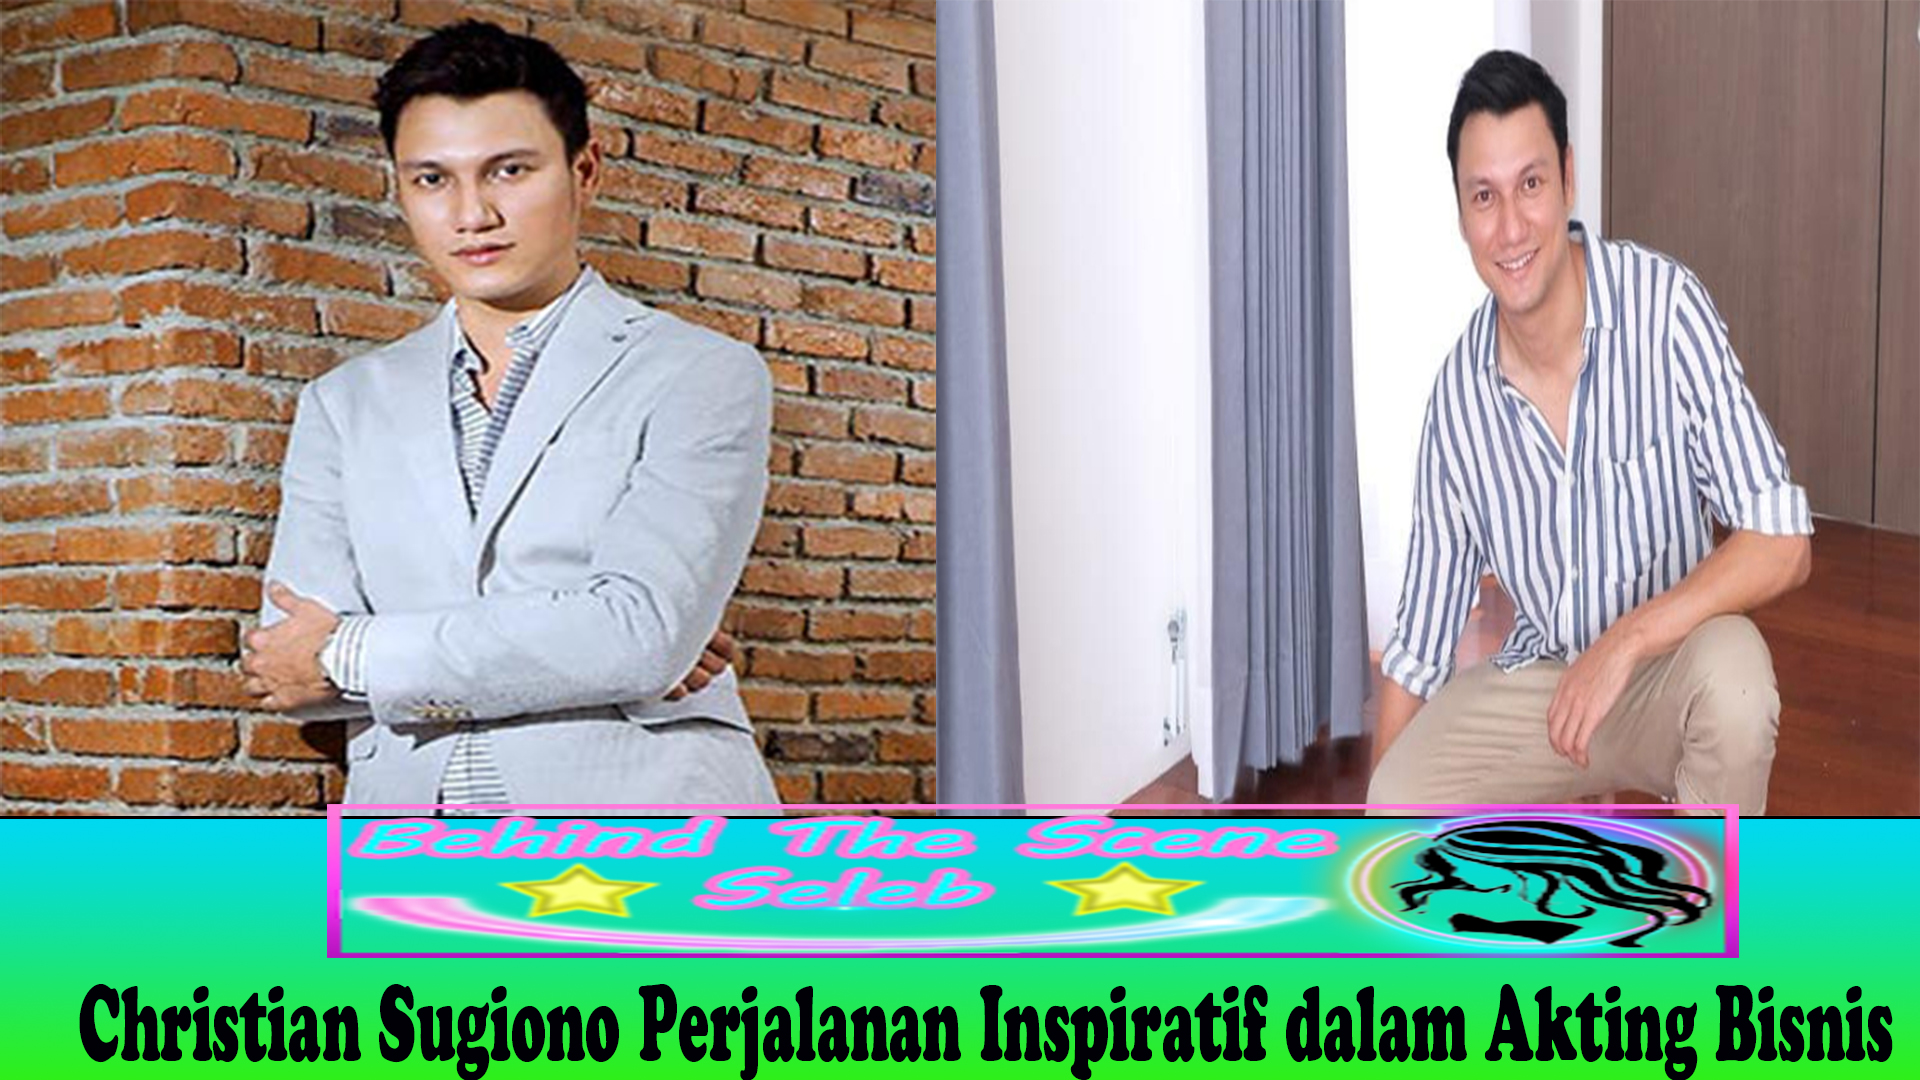 Christian Sugiono Perjalanan Inspiratif dalam Akting Bisnis